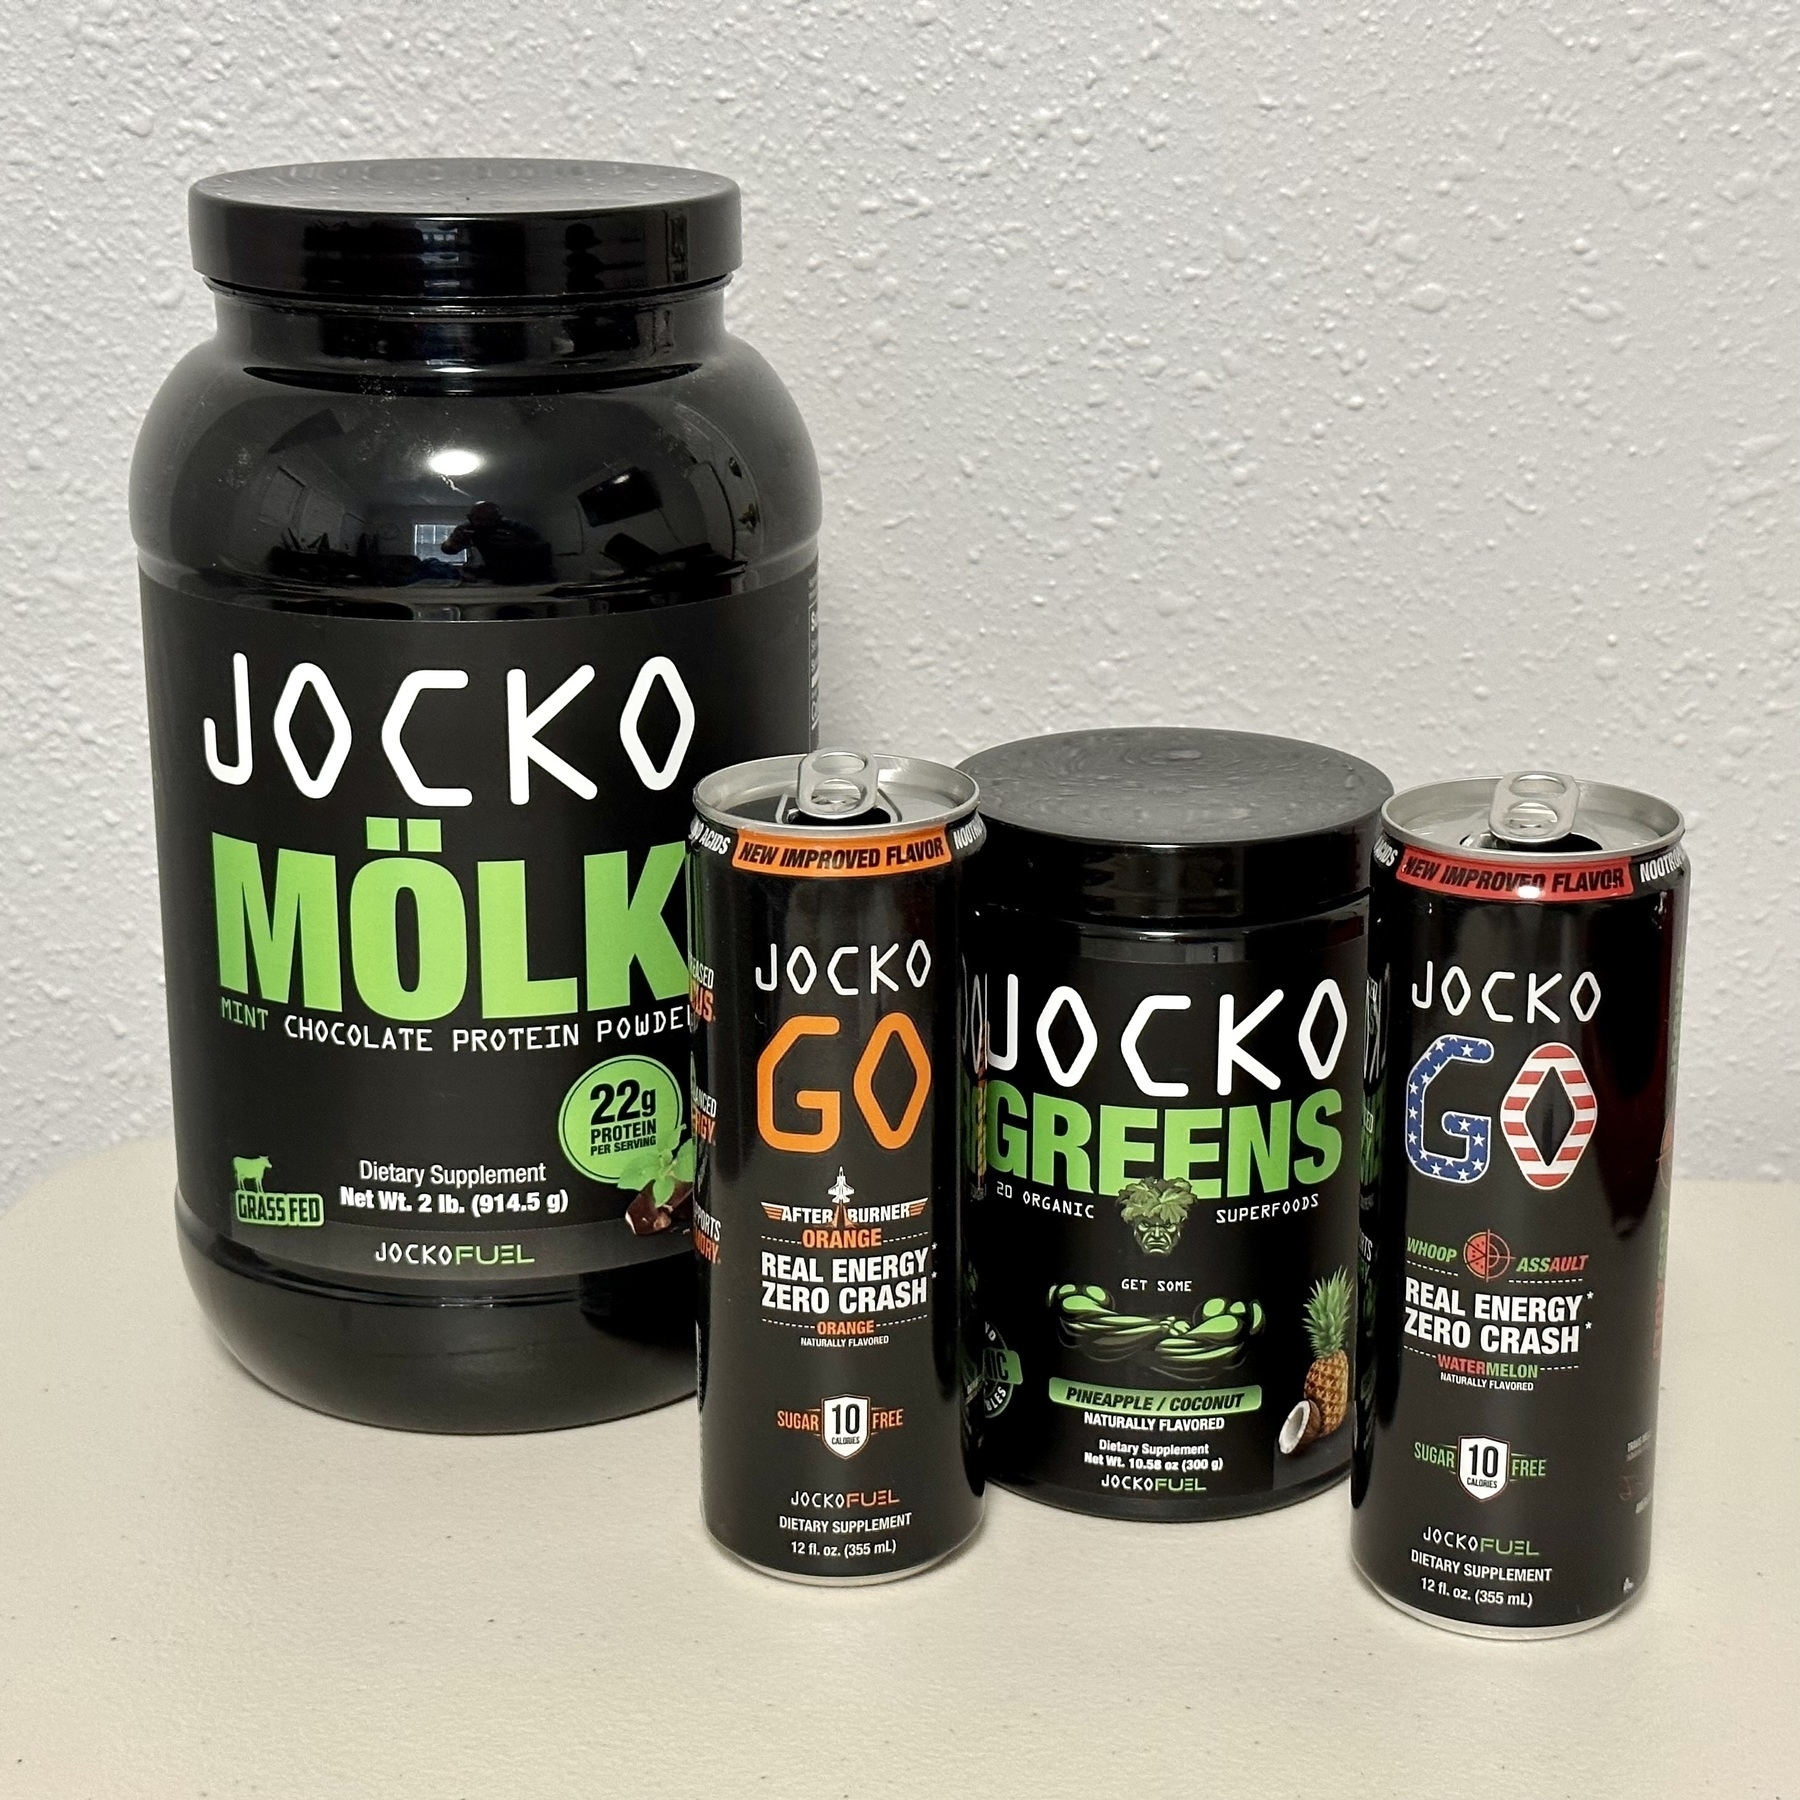 Jocko Mölk, Go, Greens, & Go